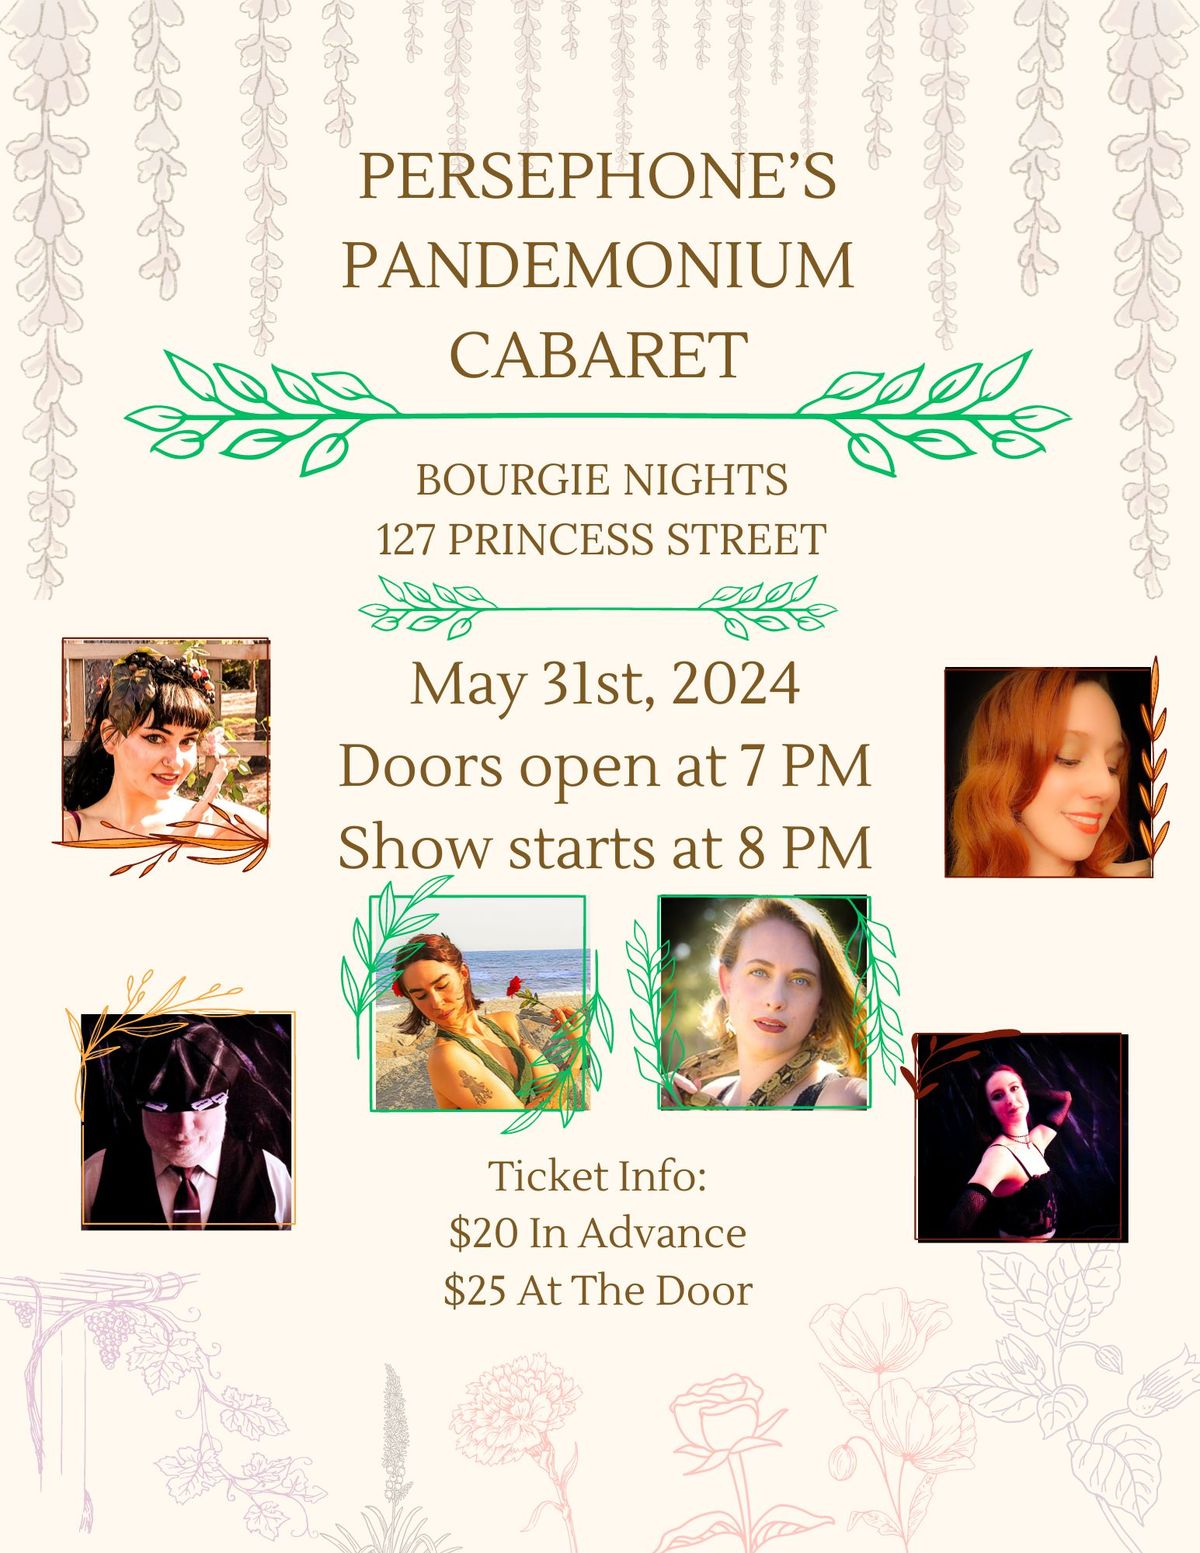 Persephone's Pandemonium Cabaret